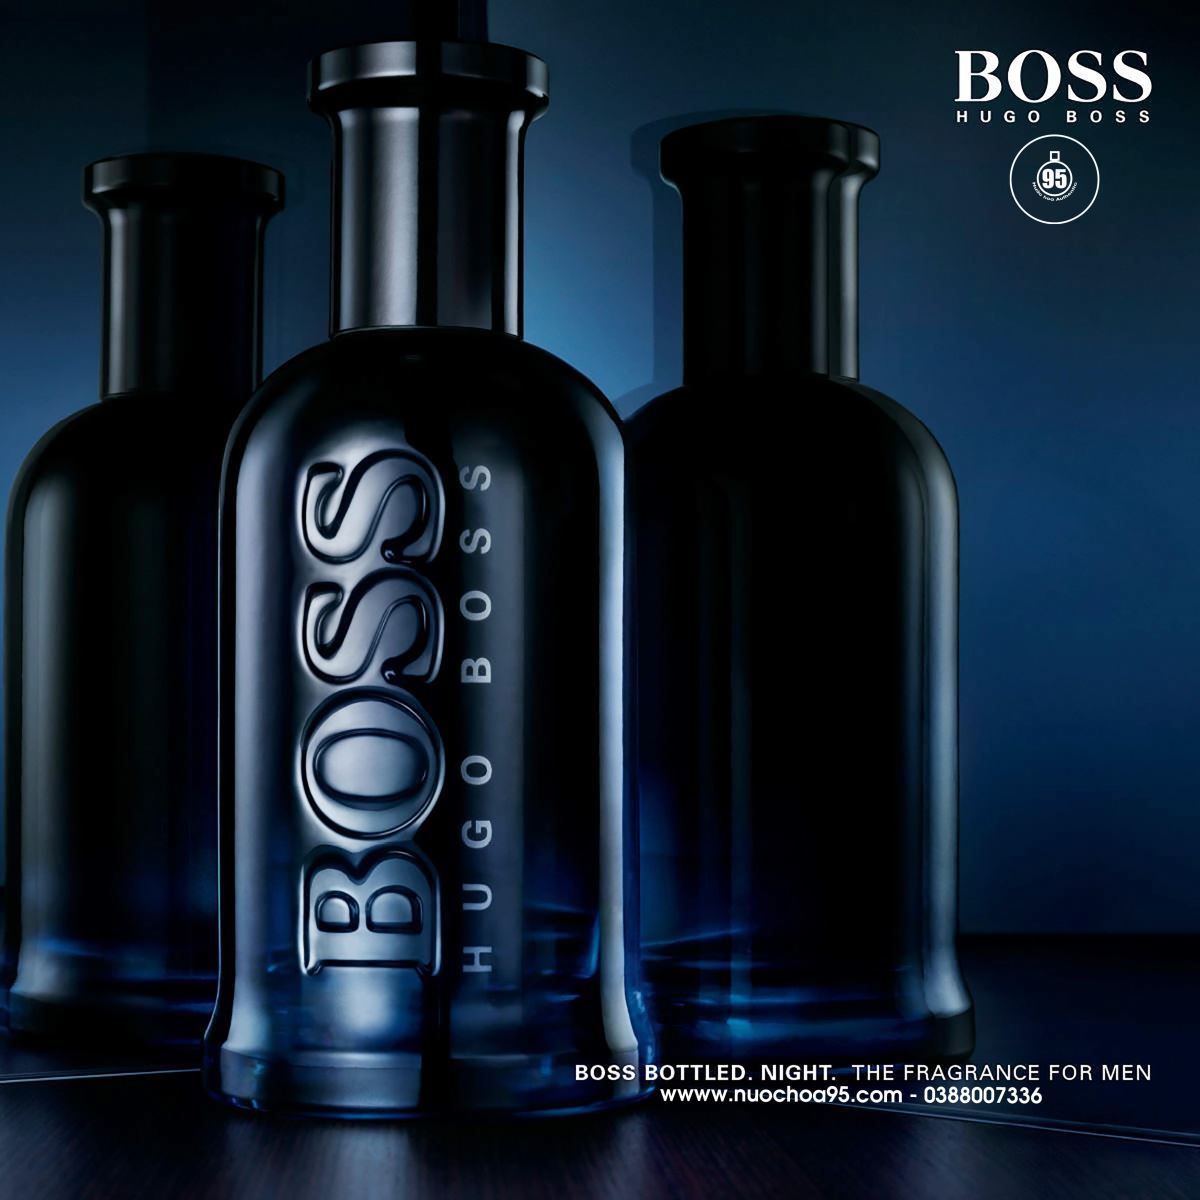 Nước hoa Hugo Boss Bottled Night  - Ảnh 2